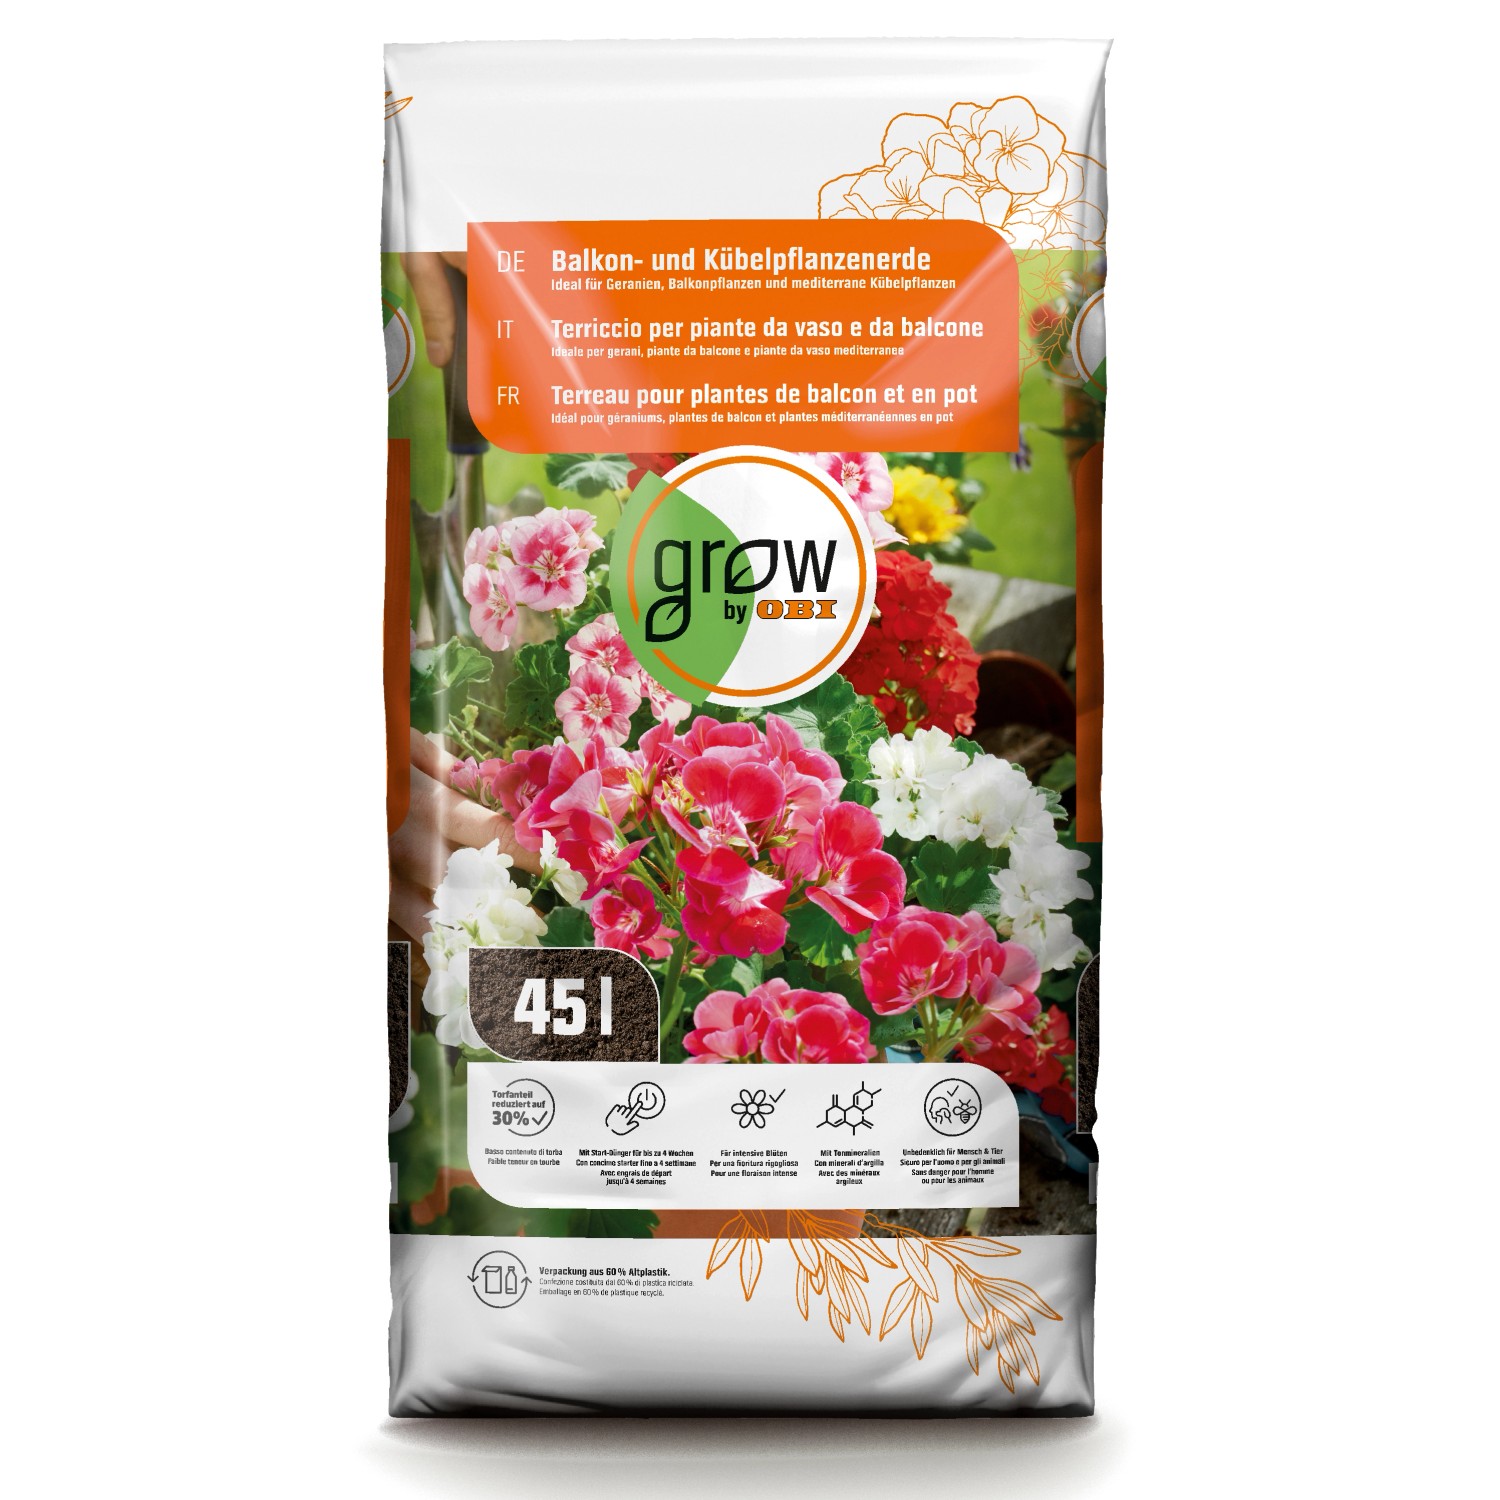 GROW by OBI Balkon- und Kübelpflanzenerde, 45l günstig online kaufen